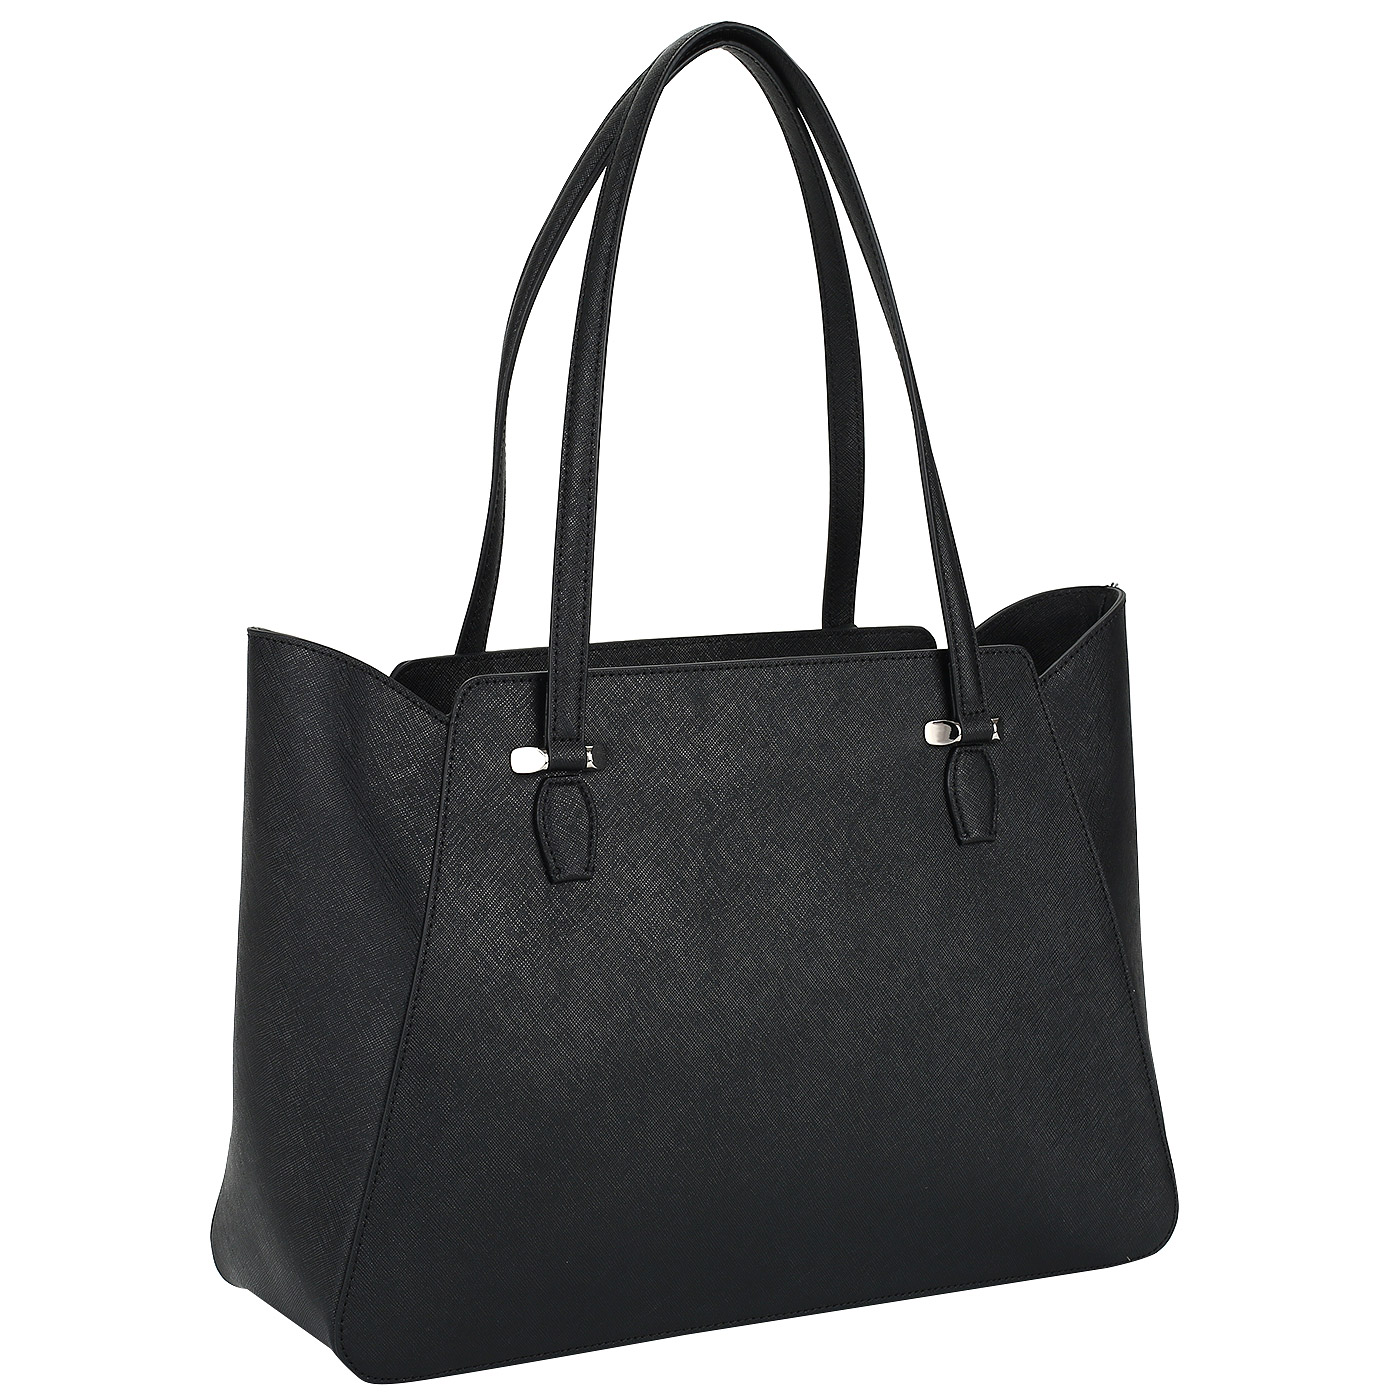 Женская сафьяновая сумка с кармашком для смартфона Cromia Perla